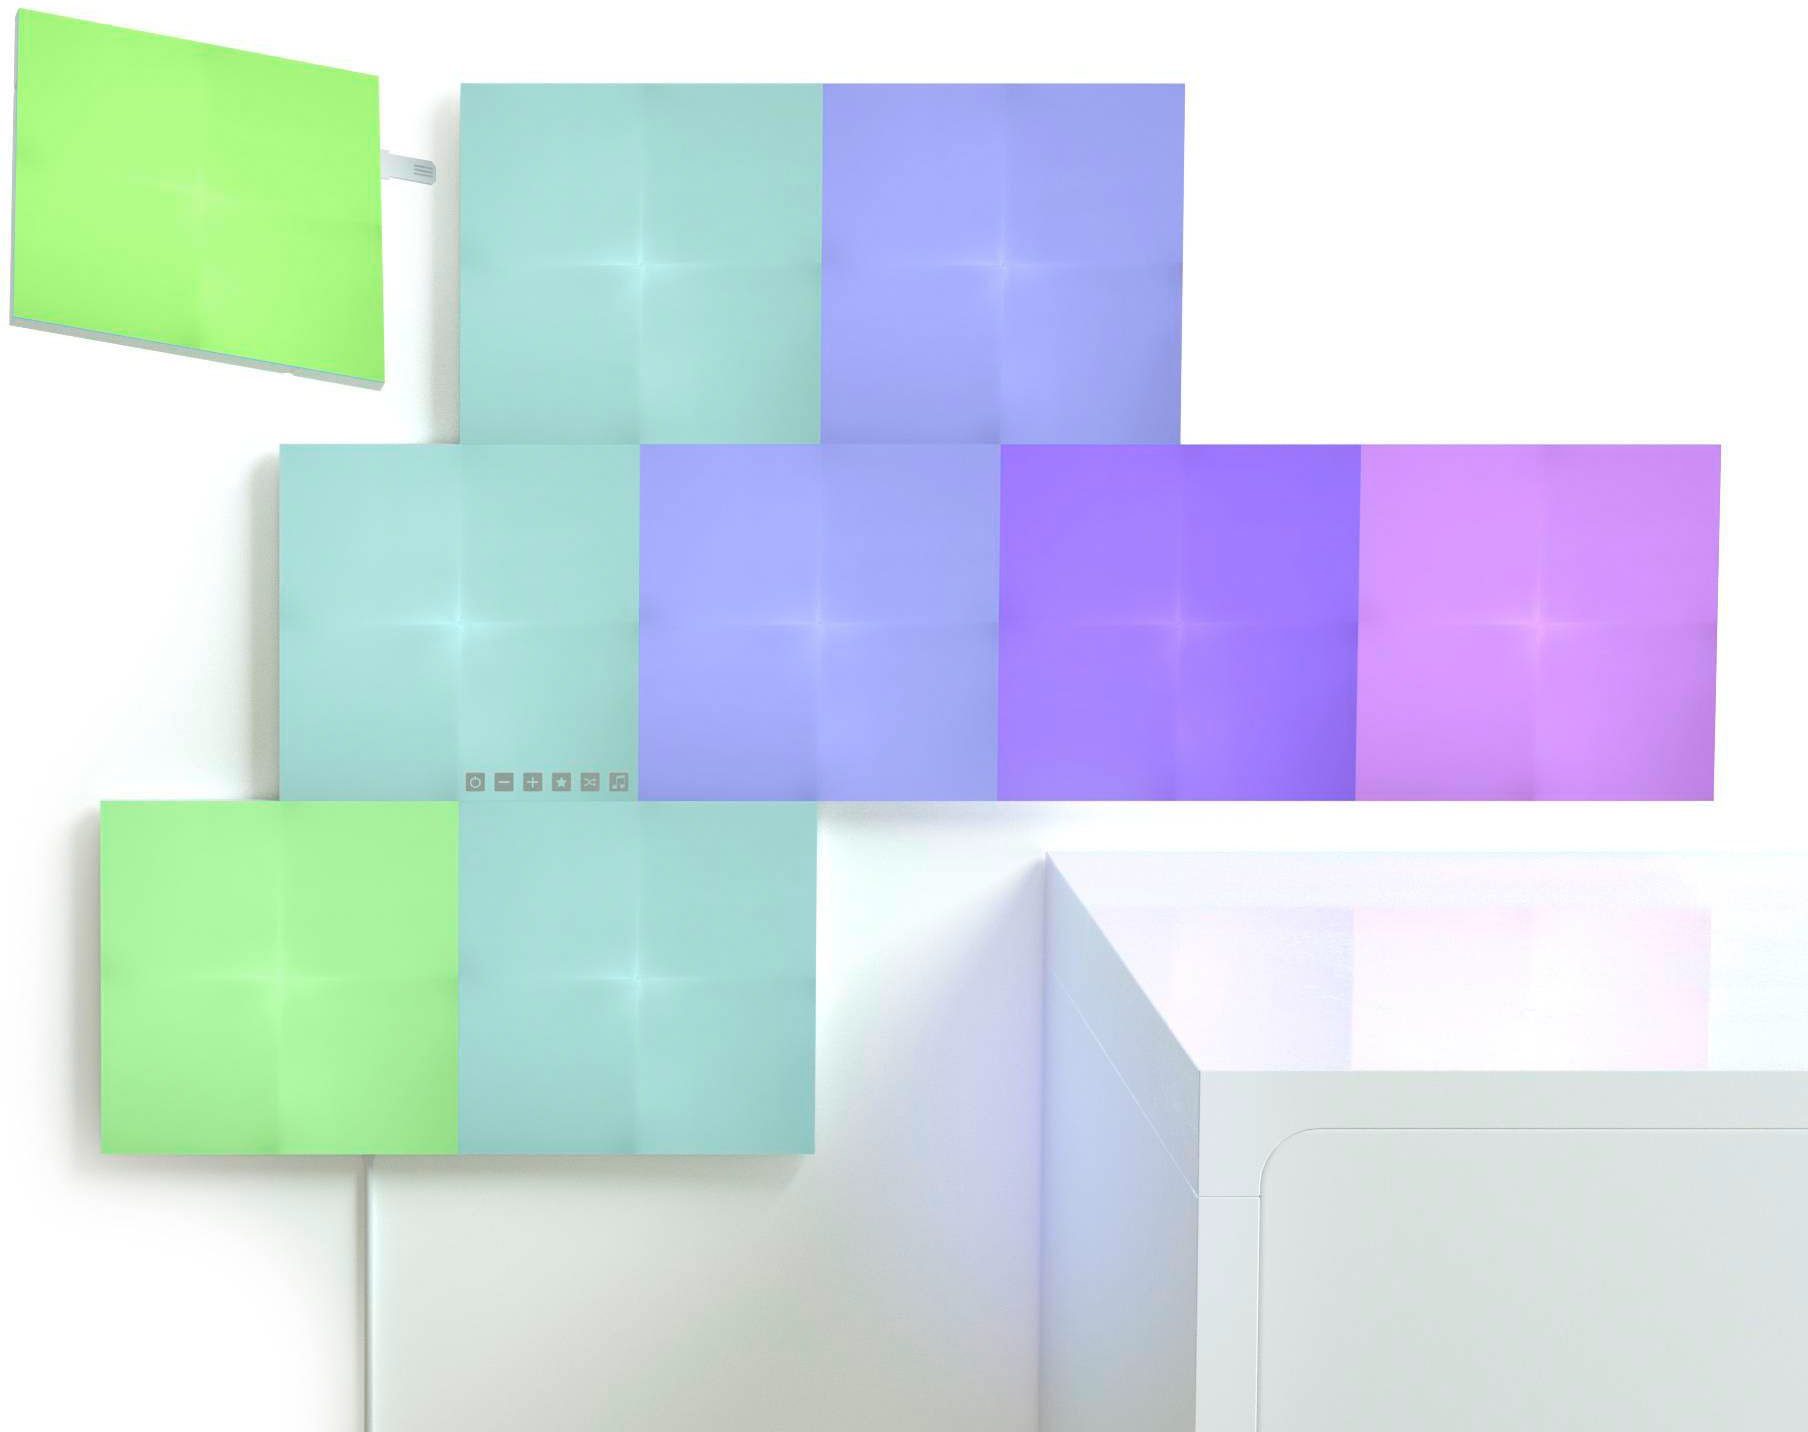 LED integriert, LED Canvas, Panel fest nanoleaf Farbwechsler Dimmfunktion,